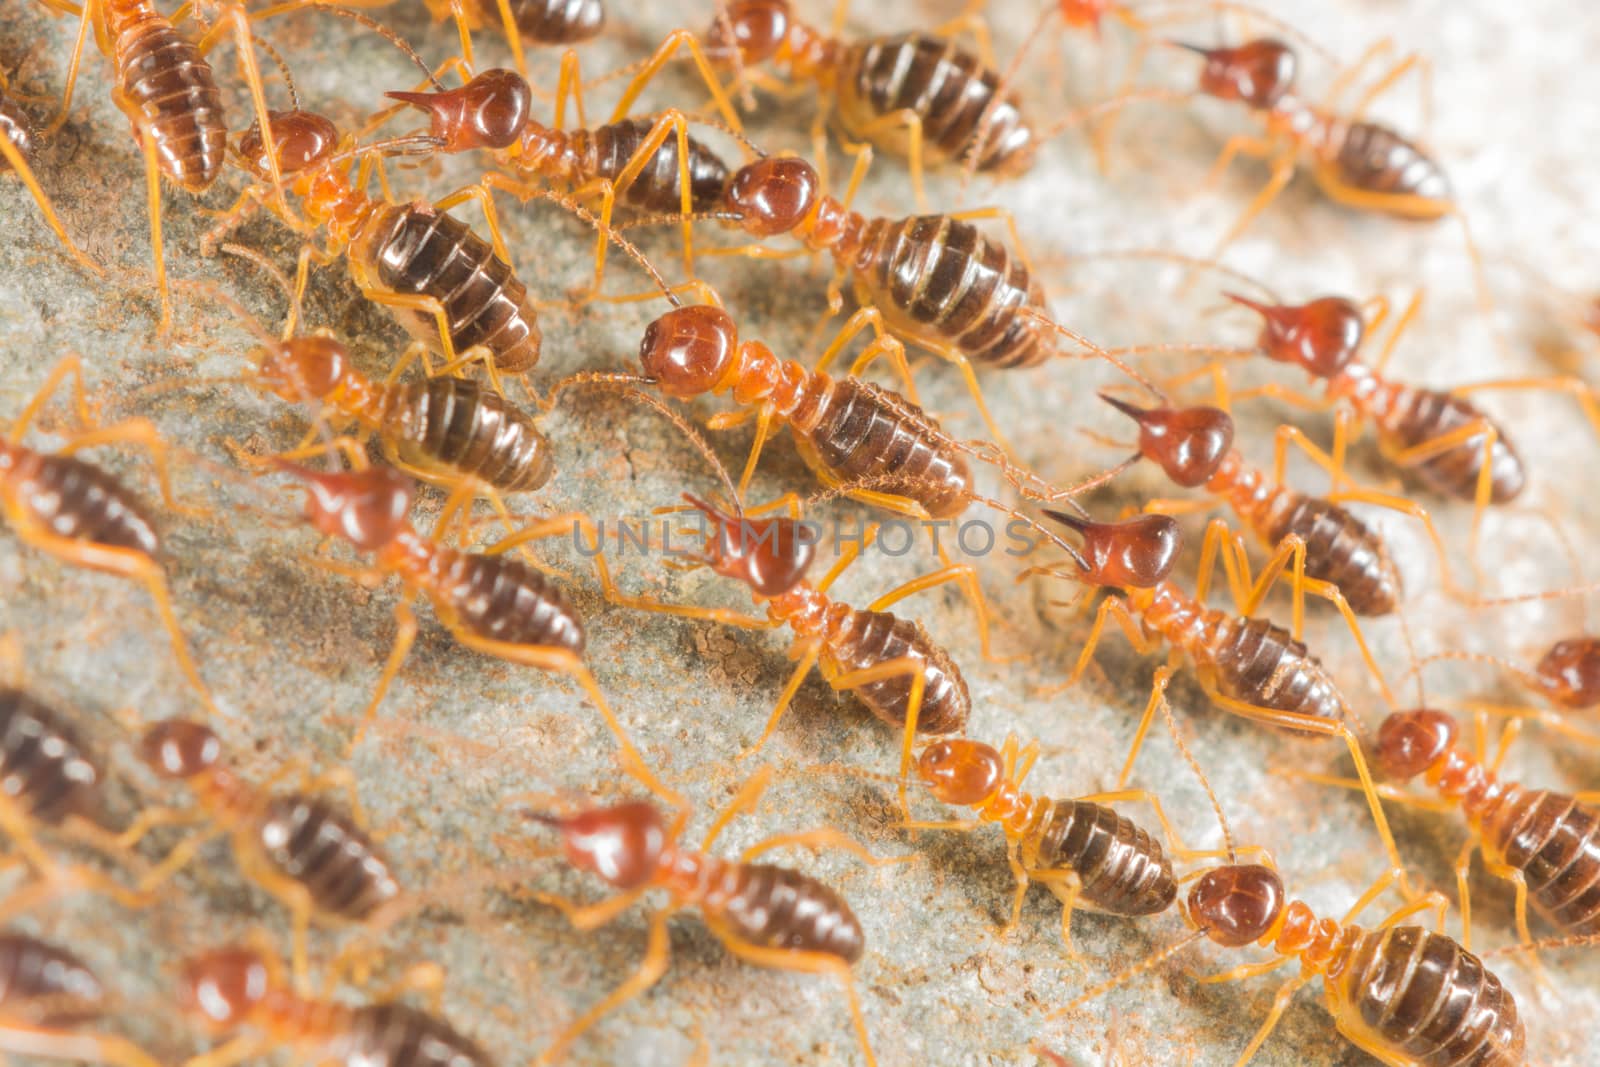 Termite by nemorest